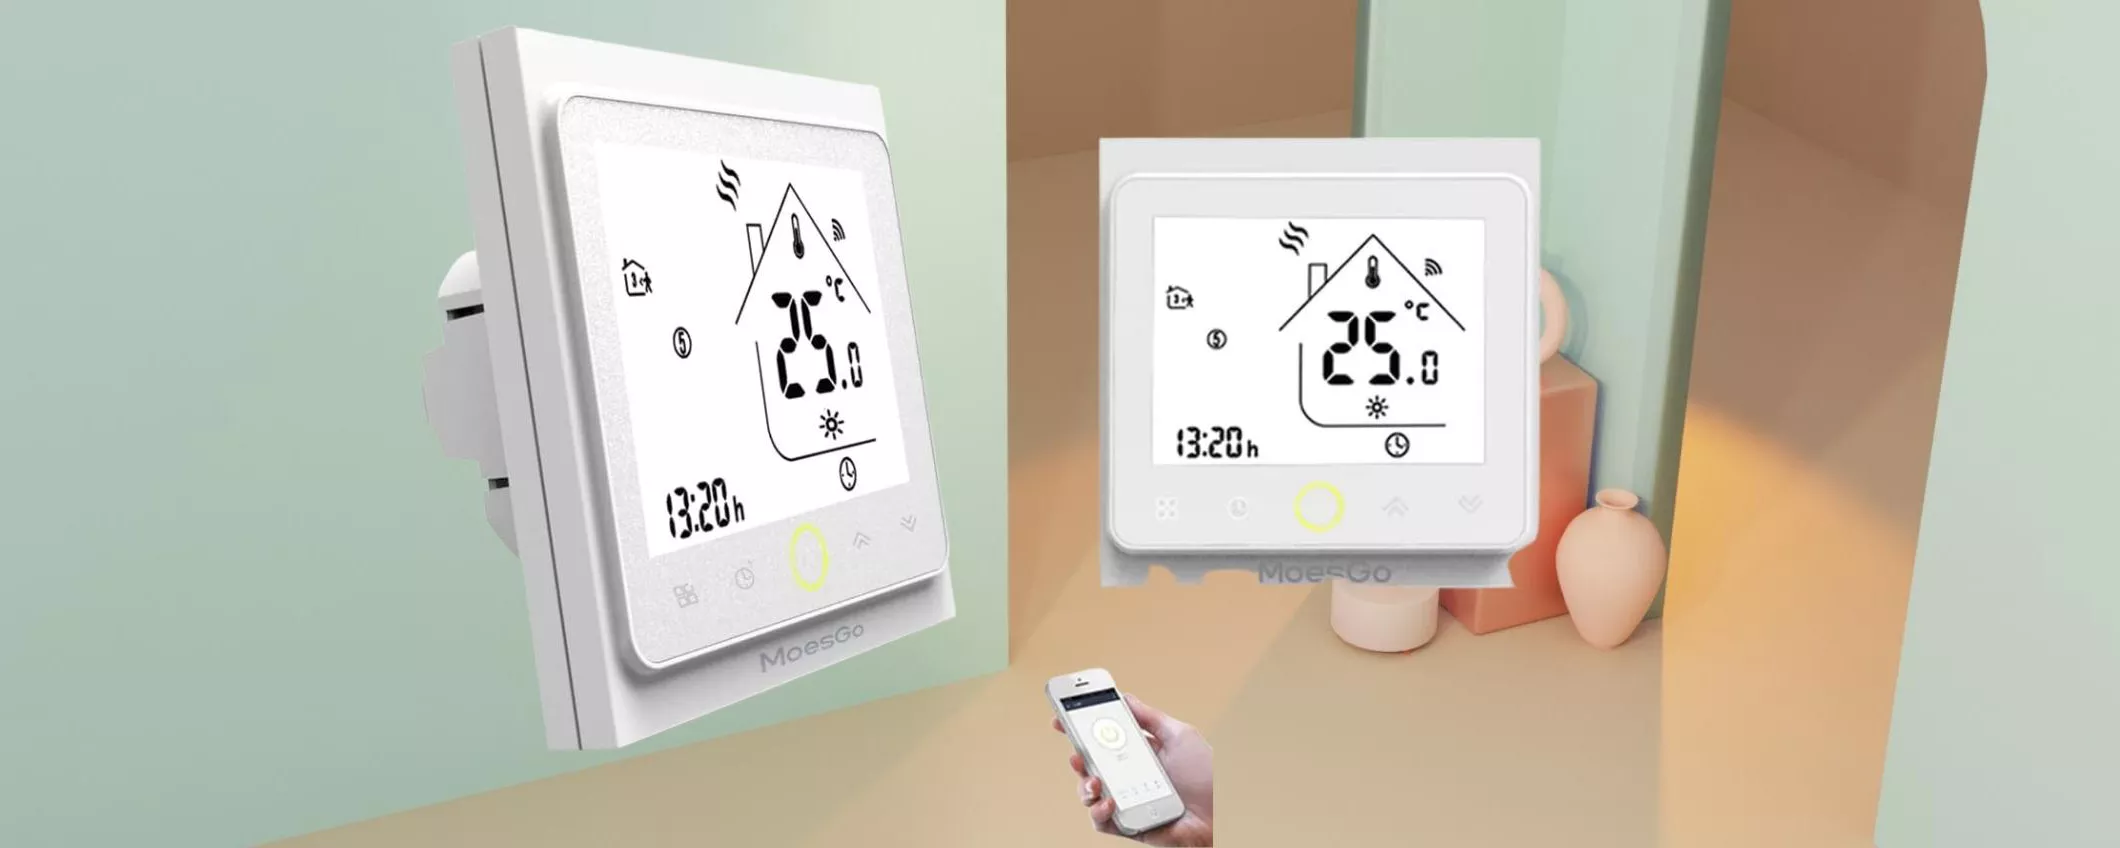 Casa intelligente con questo termostato WIFI, semplice da usare - Webnews